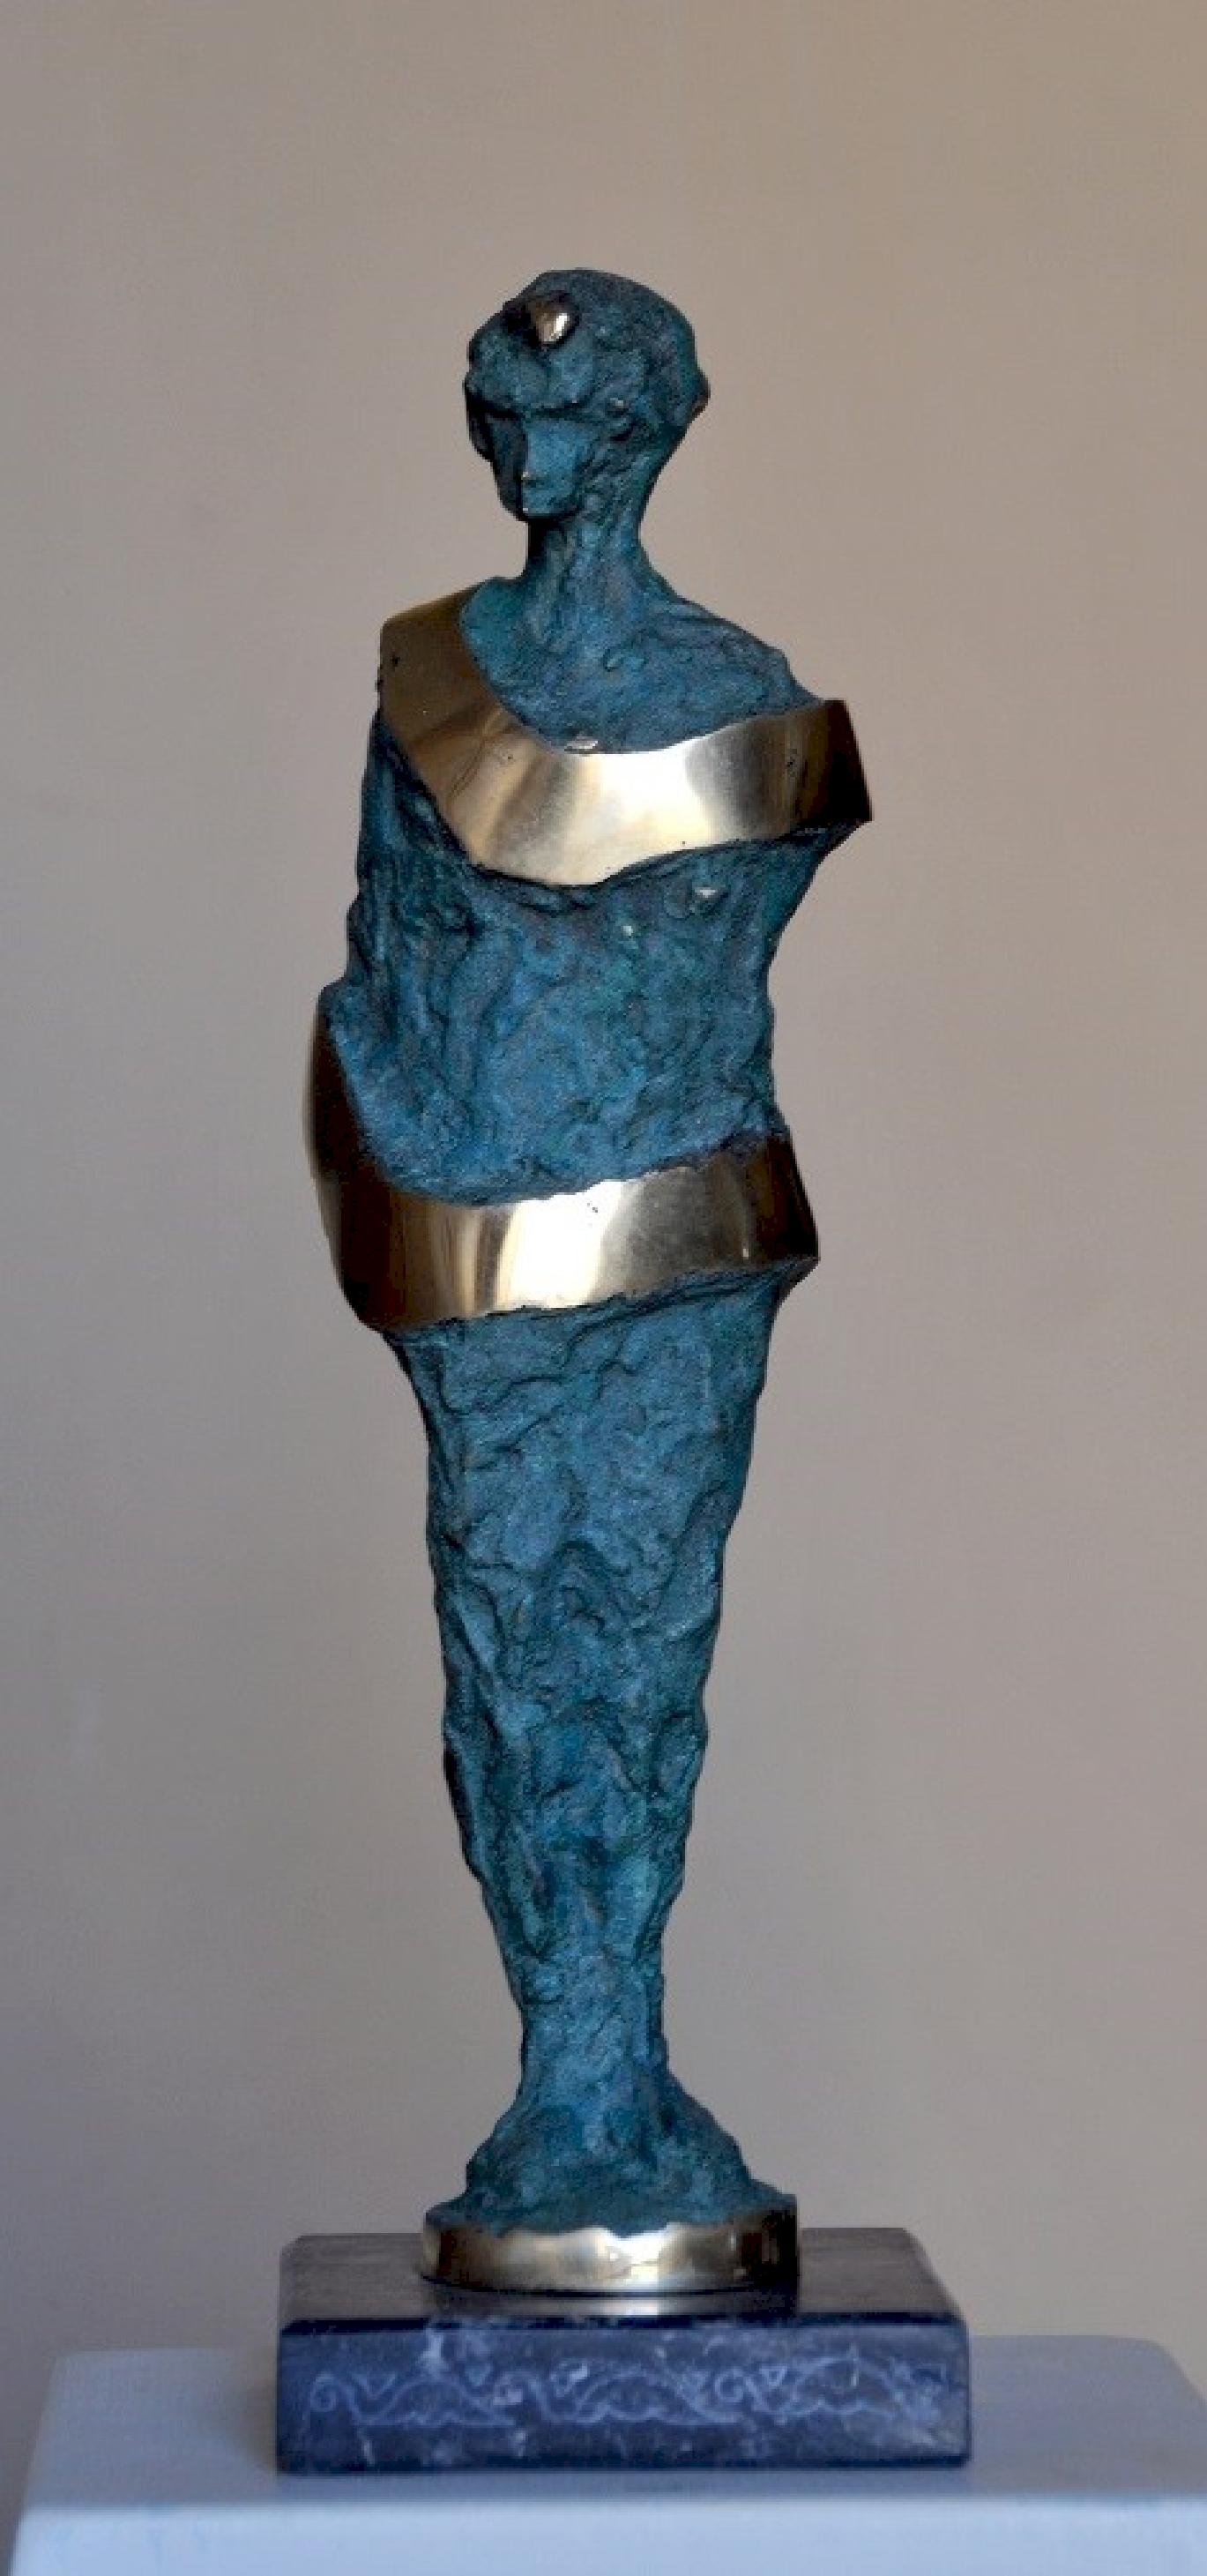 "Geschmückt II" Bronze-Skulptur 14" x 4" x 2" Zoll von Sarkis Tossonian			

Sarkis Tossoonian wurde 1953 in Alexandria geboren. Er schloss sein Studium an der Fakultät für Bildende Künste/Bildhauerei 1979 ab. Seit 1980 und bis heute stellt er in